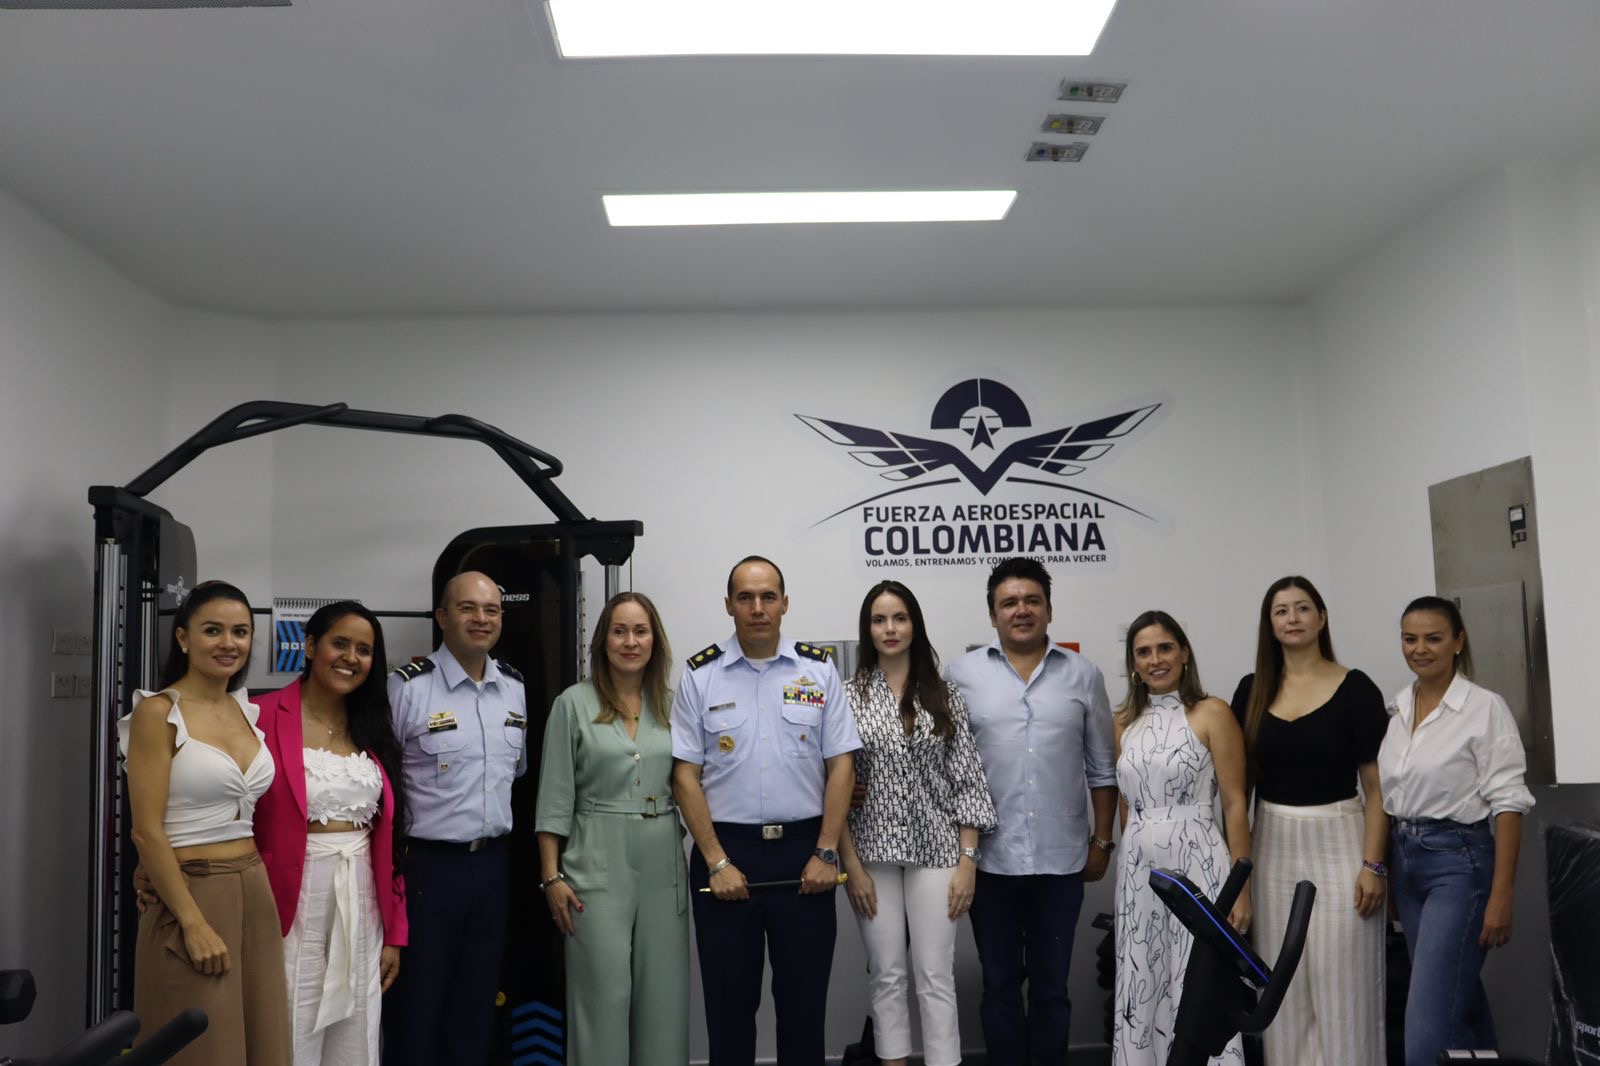 La Base Aérea “Marco Fidel Suárez”, inaugura centro de recuperación terapéutico, rehabilitación y acondicionamiento físico